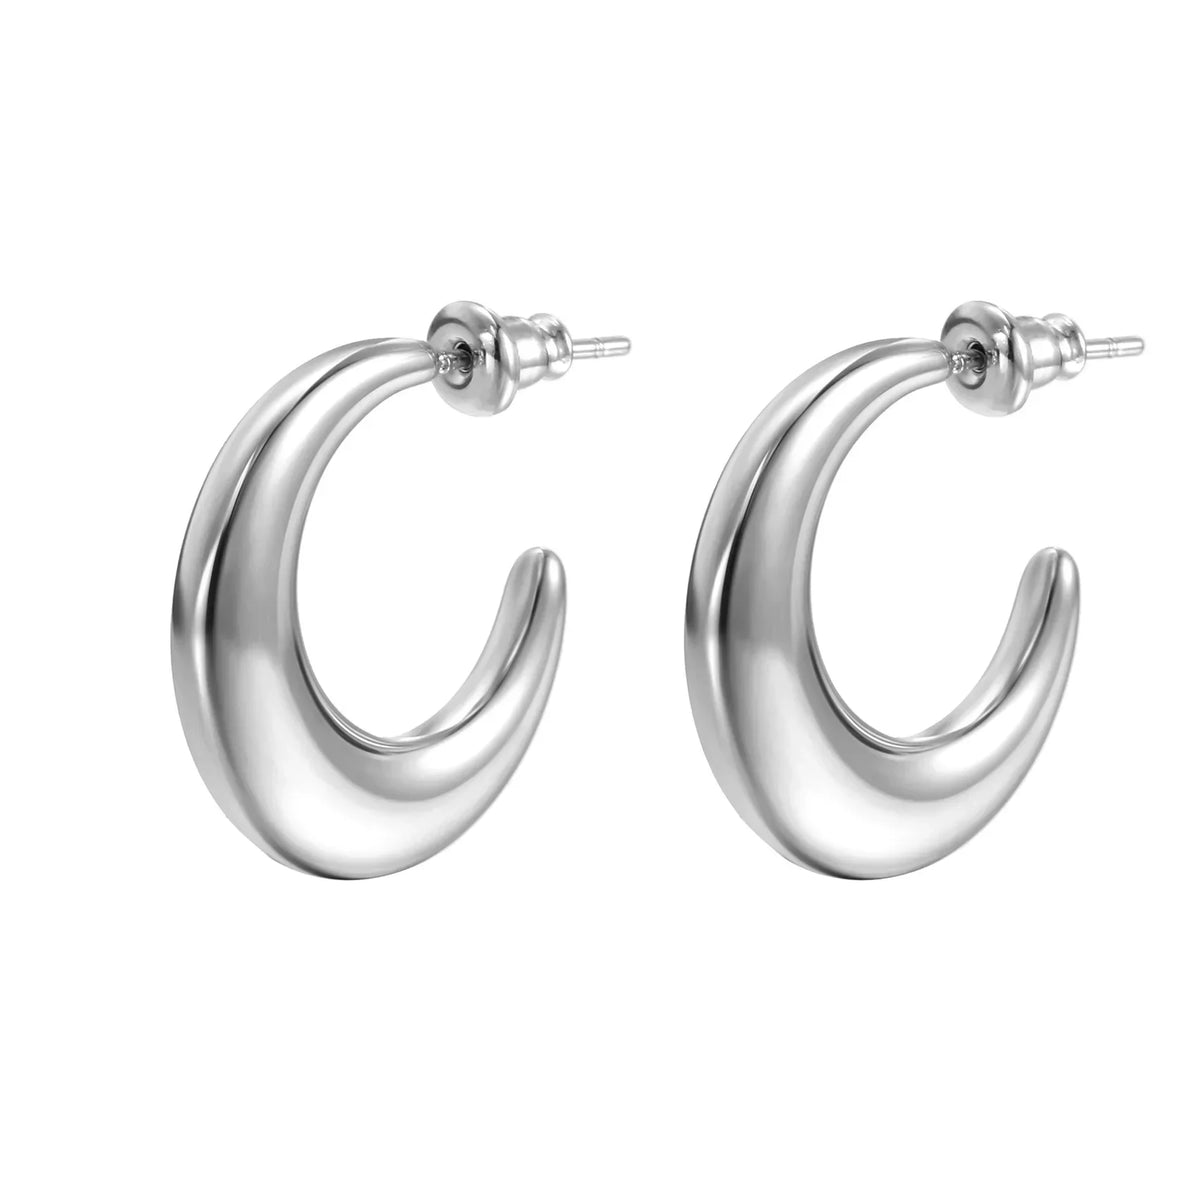 C Hoop Earrings 18k Gold Plated Waterproof Tarnish Free Jewelry KESLEY Medium Size Hoop Earrings